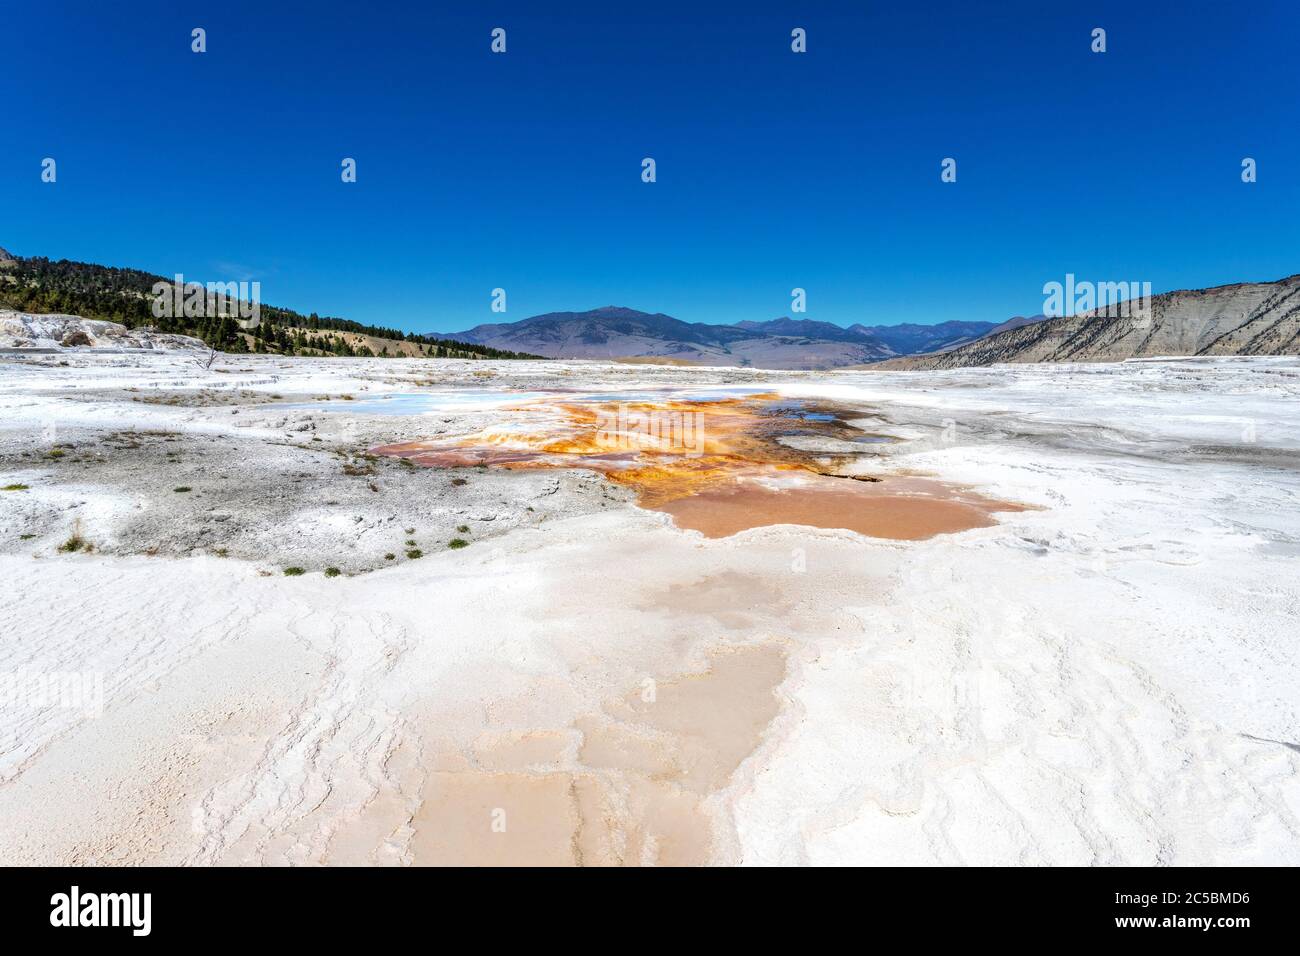 Gros plan sur la zone thermale volcanique de Canary Spring de main Terrace à Mammoth Hot Springs dans le parc national de Yellowstone, États-Unis. Banque D'Images